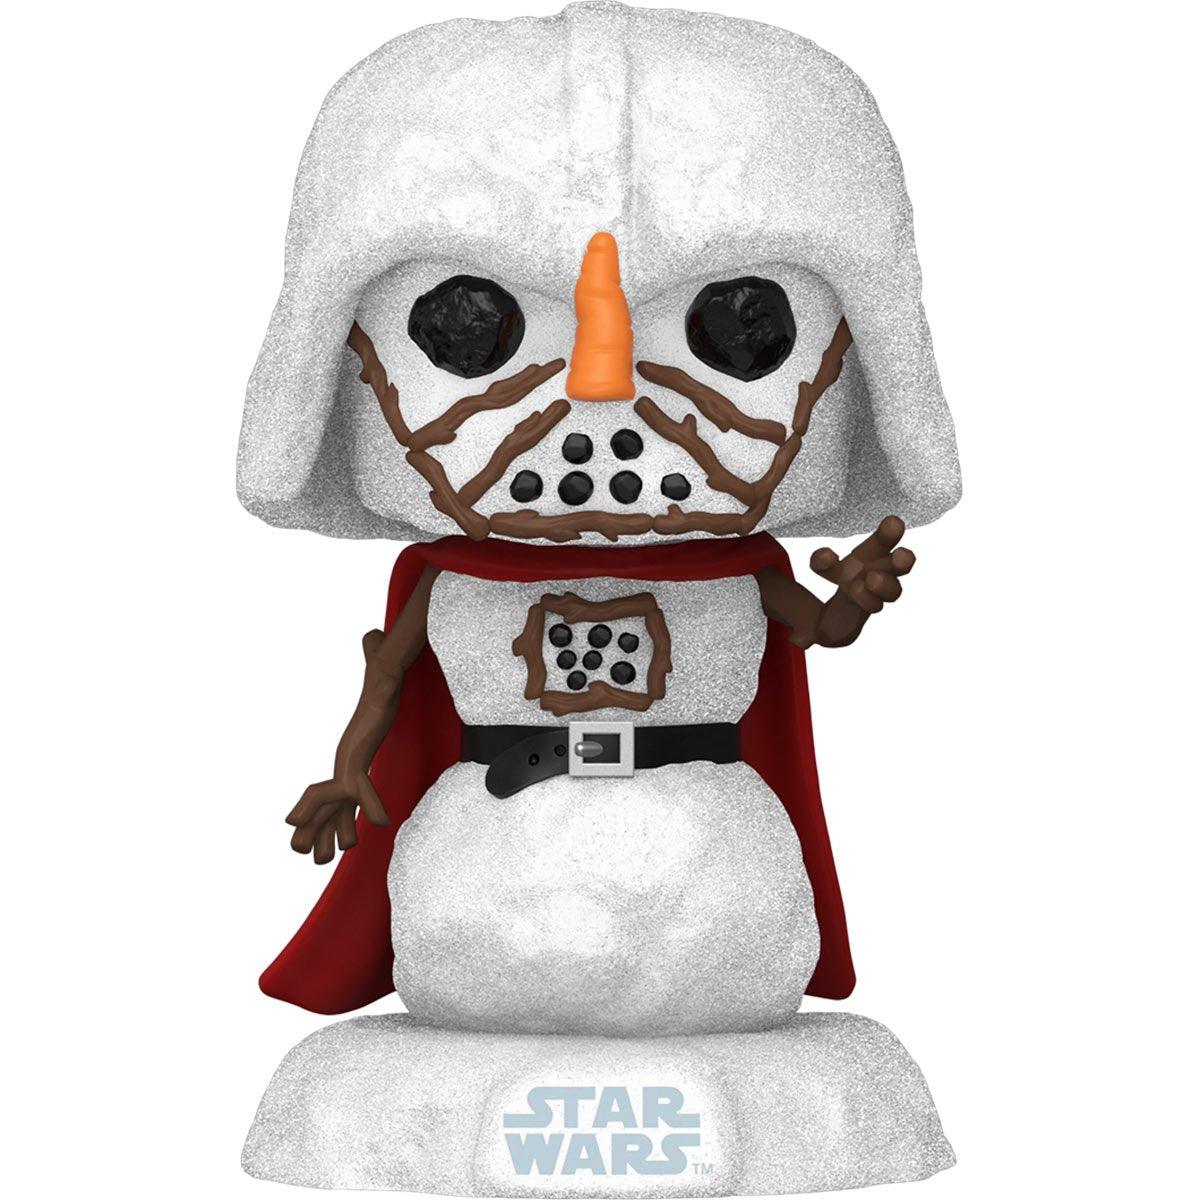 Star Wars Holiday Darth Vader Snowman Pop! Vinyl Figure - D-Pop